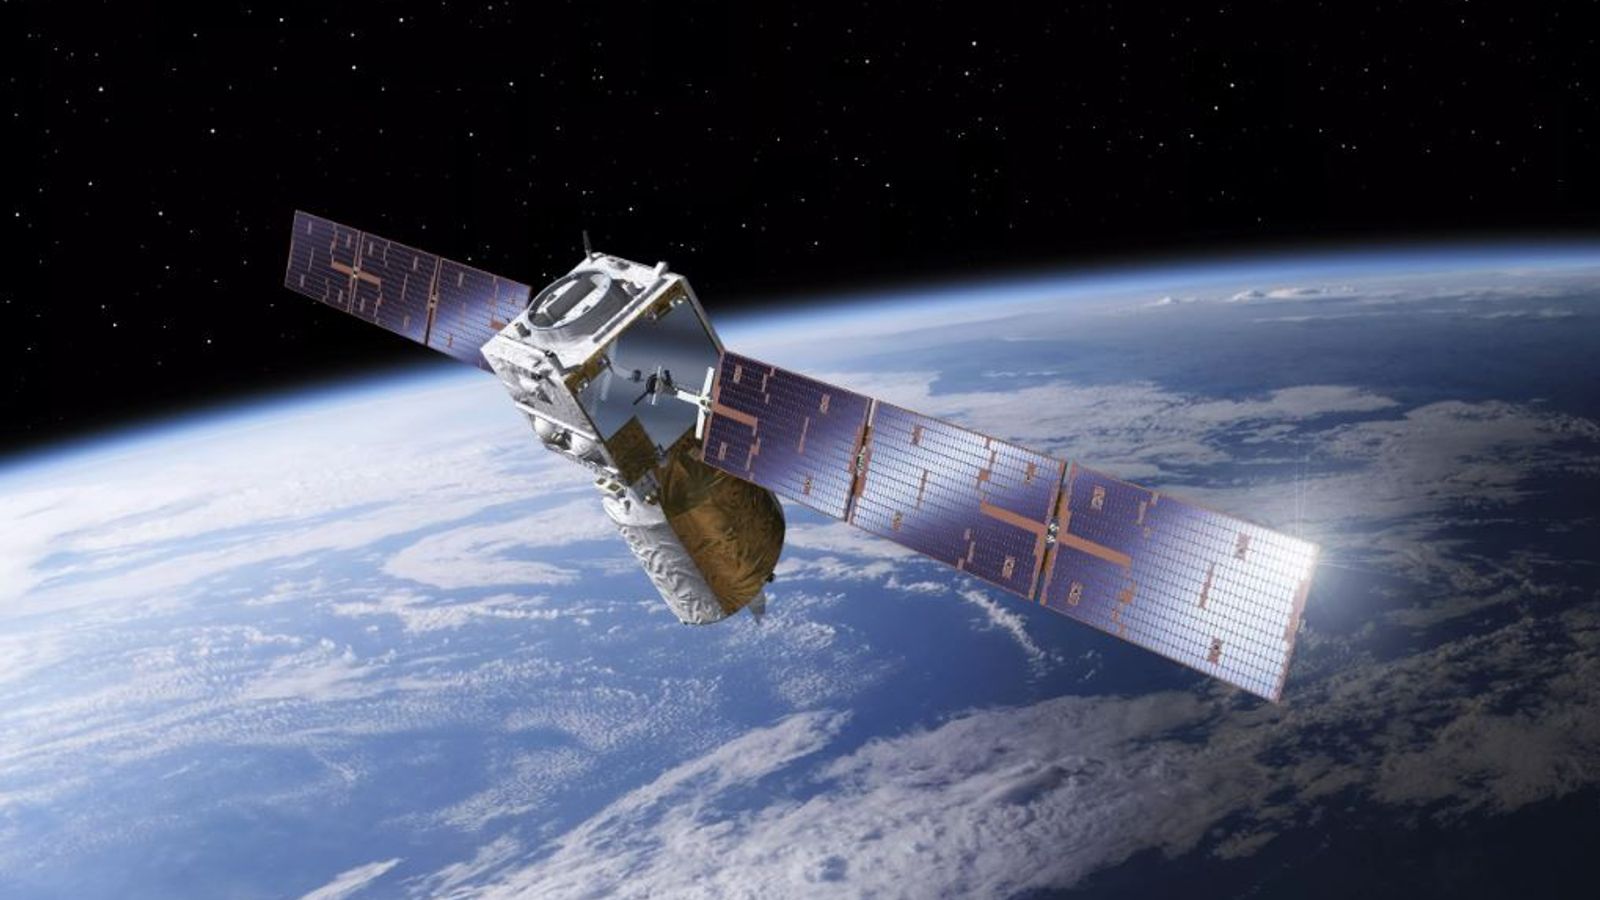 Aeolus: Ein Satellit von der Größe eines Kleinwagens soll in wenigen Wochen auf die Erde fallen |  Wissenschaftliche und technische Nachrichten